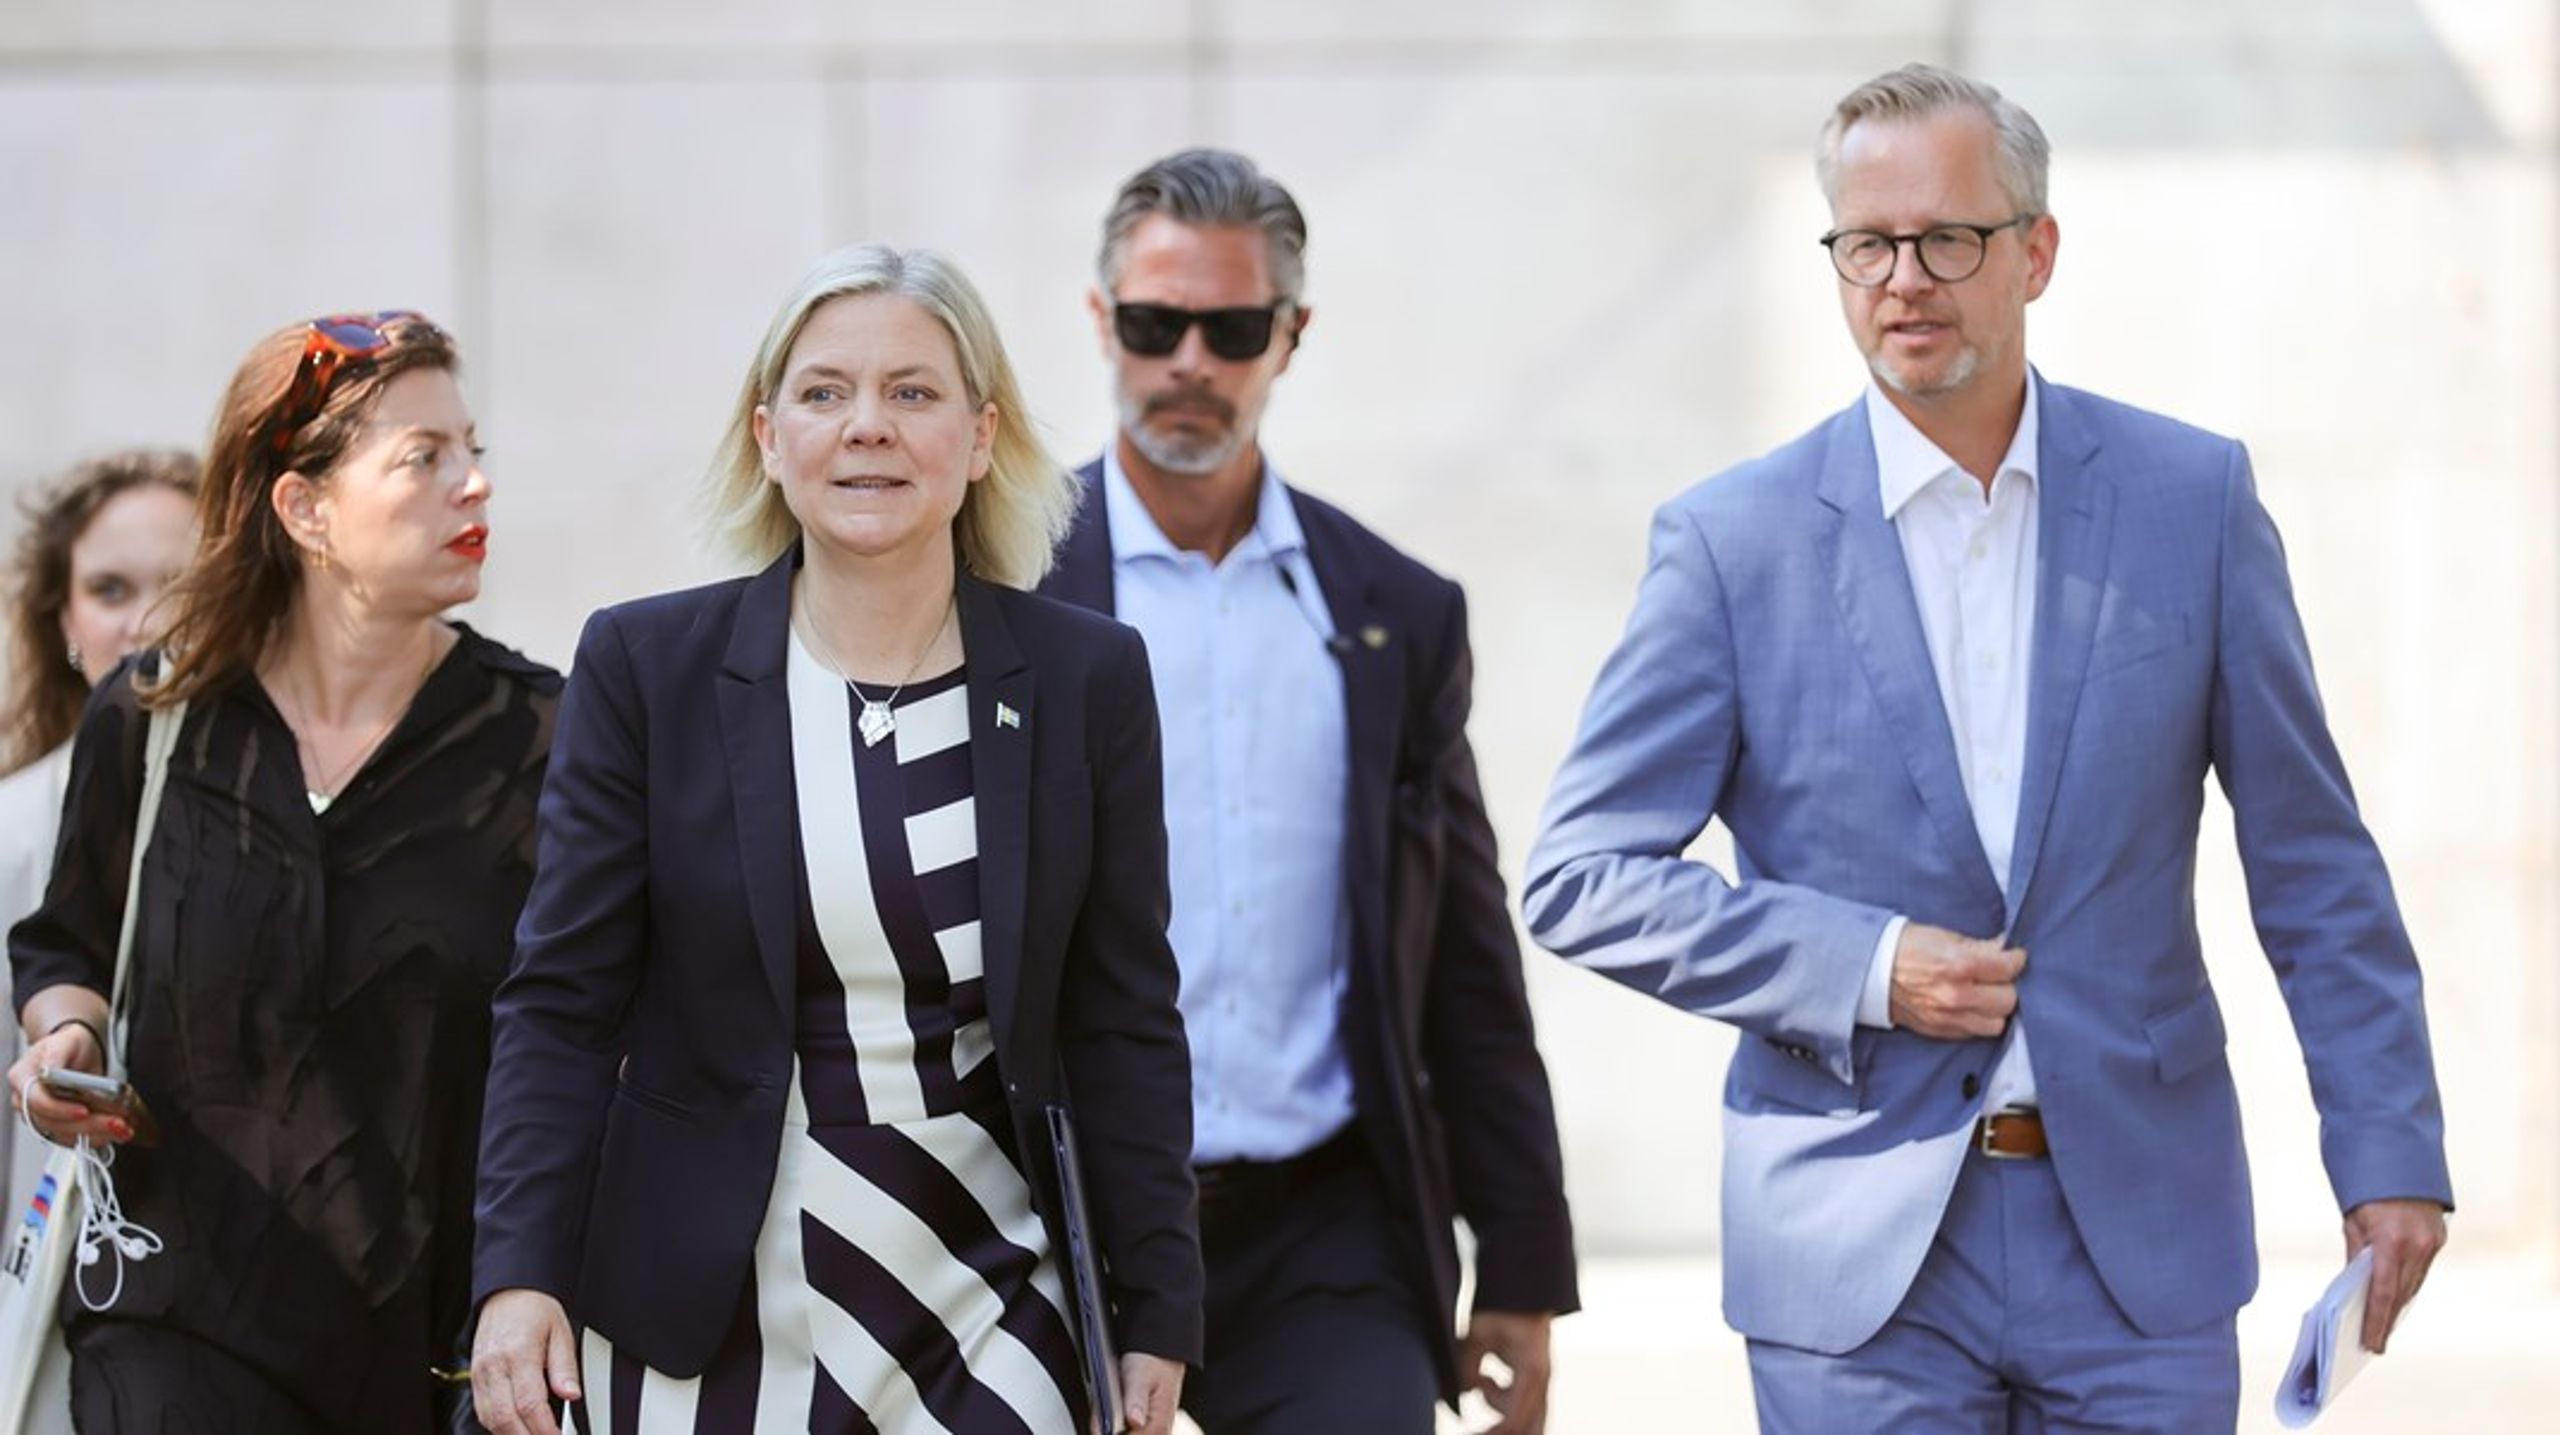 Socialdemokraternas partiledare Magdalena Andersson och Mikael Damberg, ekonomiskpolitisk talesperson, vid Almedalsveckan.